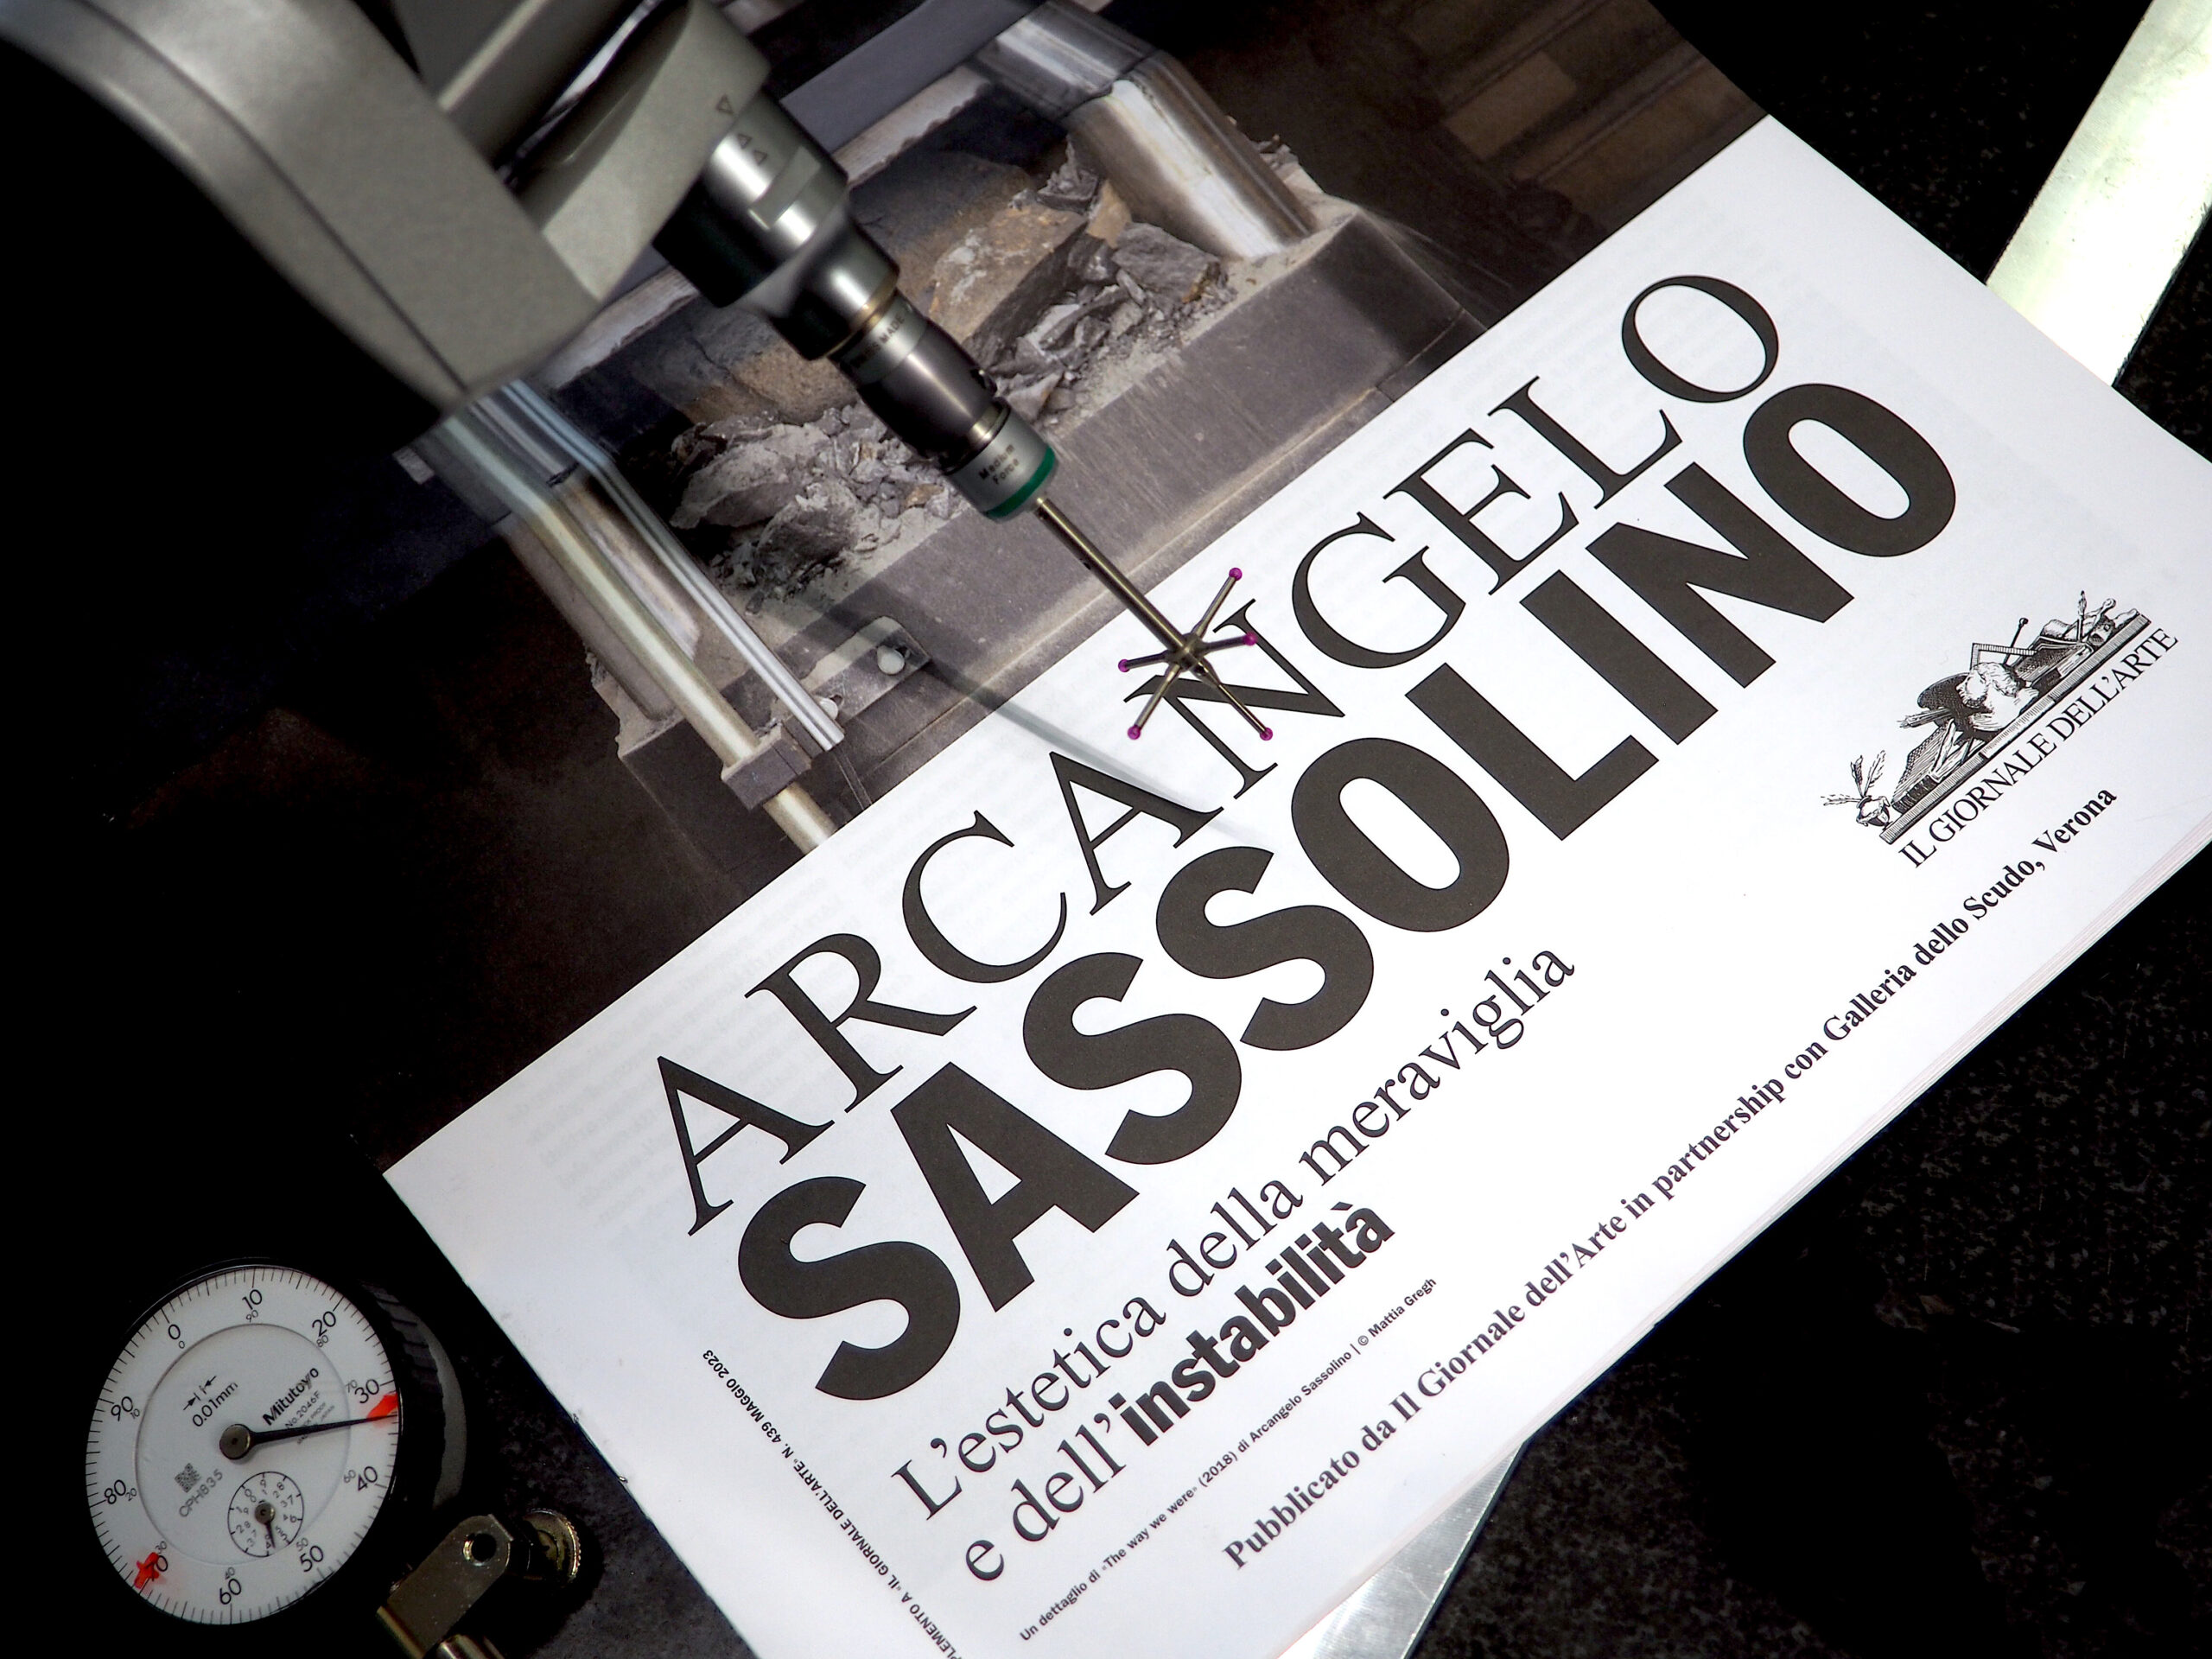 Focus on: Arcangelo Sassolino – Il Giornale dell’Arte